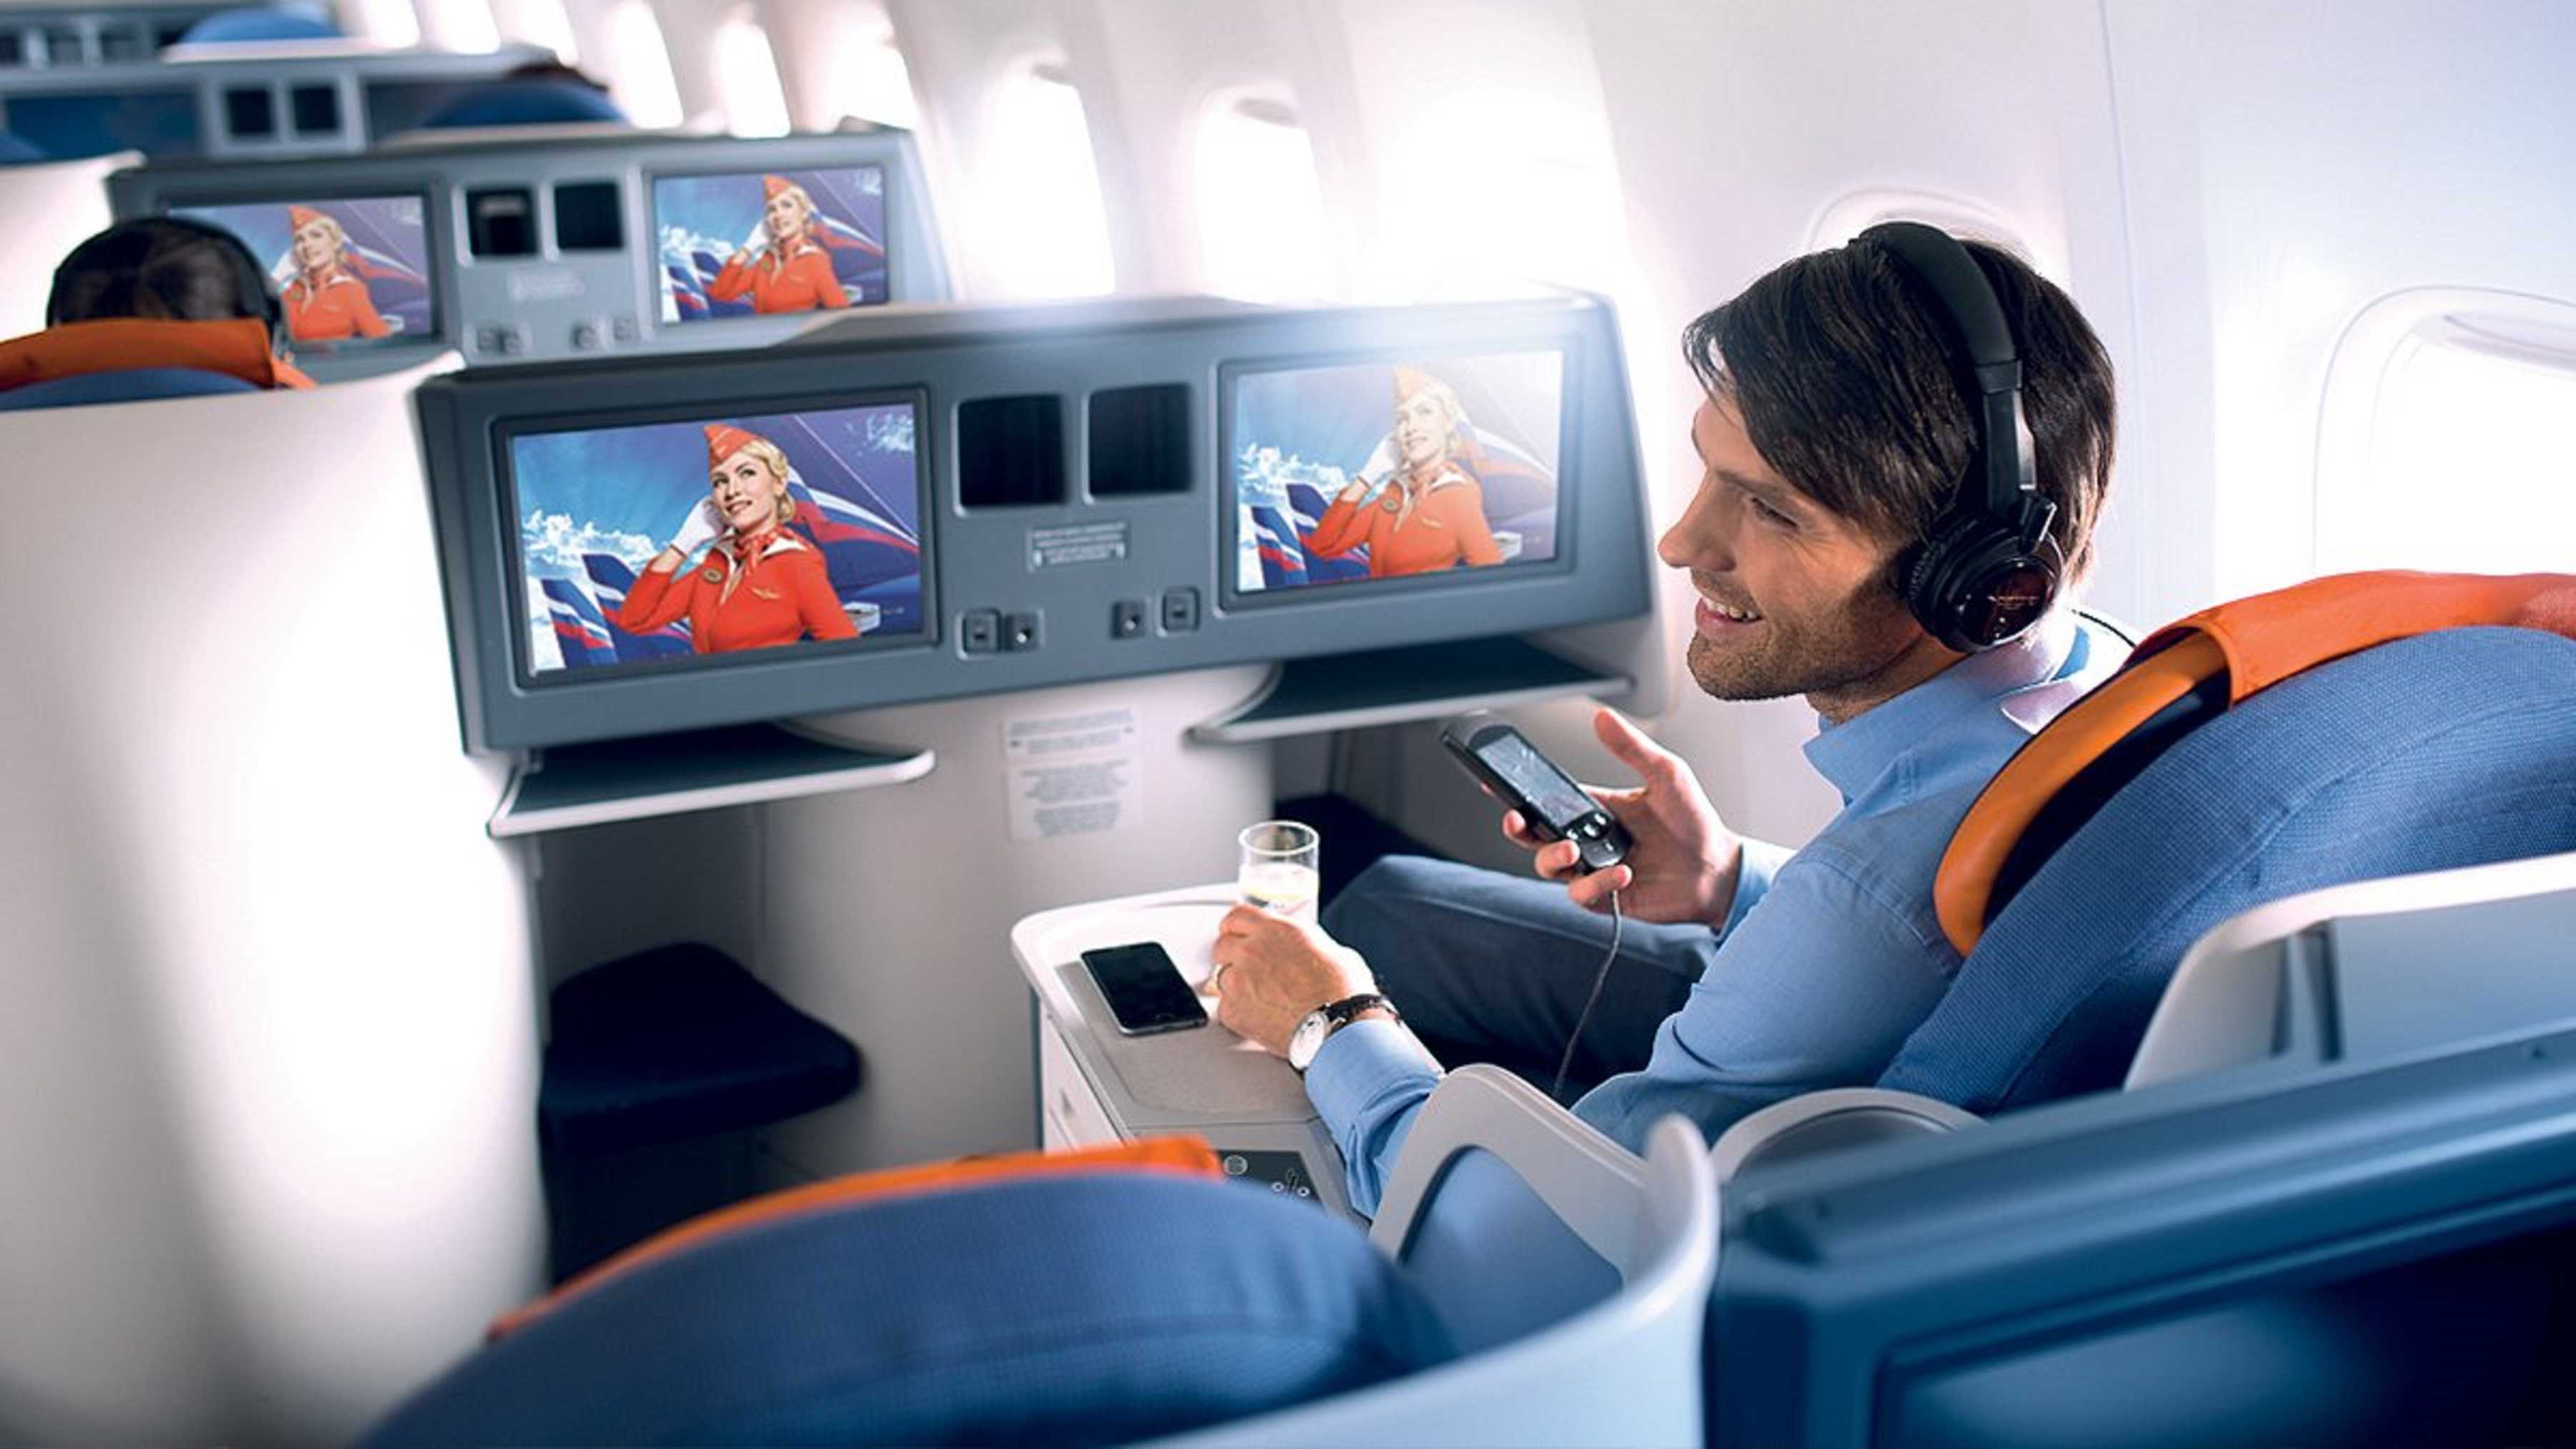 Система развлечений. Мультимедиа в самолете. Развлечения в самолете. Экран в самолете. Аэрофлот пассажир бизнес класса.